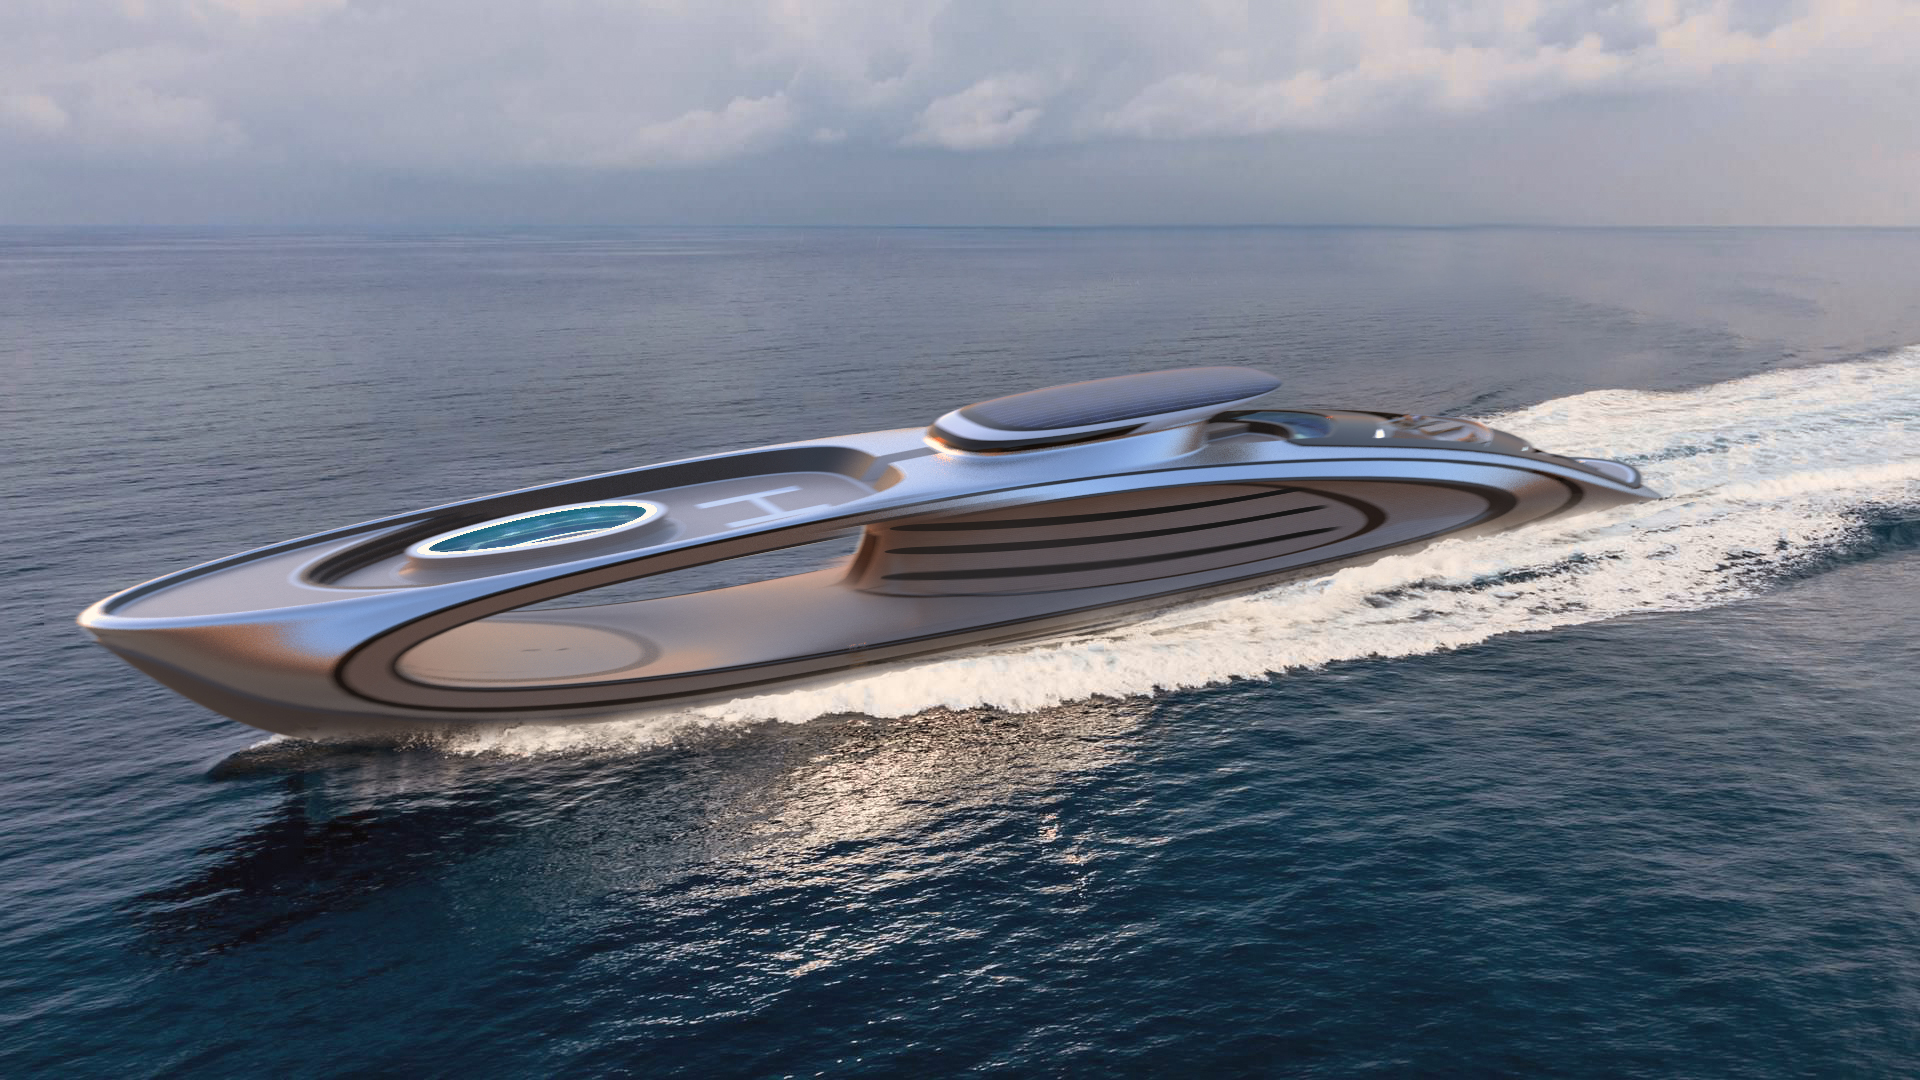 The Shape Superyacht design Pierpaolo Lazzarini Robb Report Italia